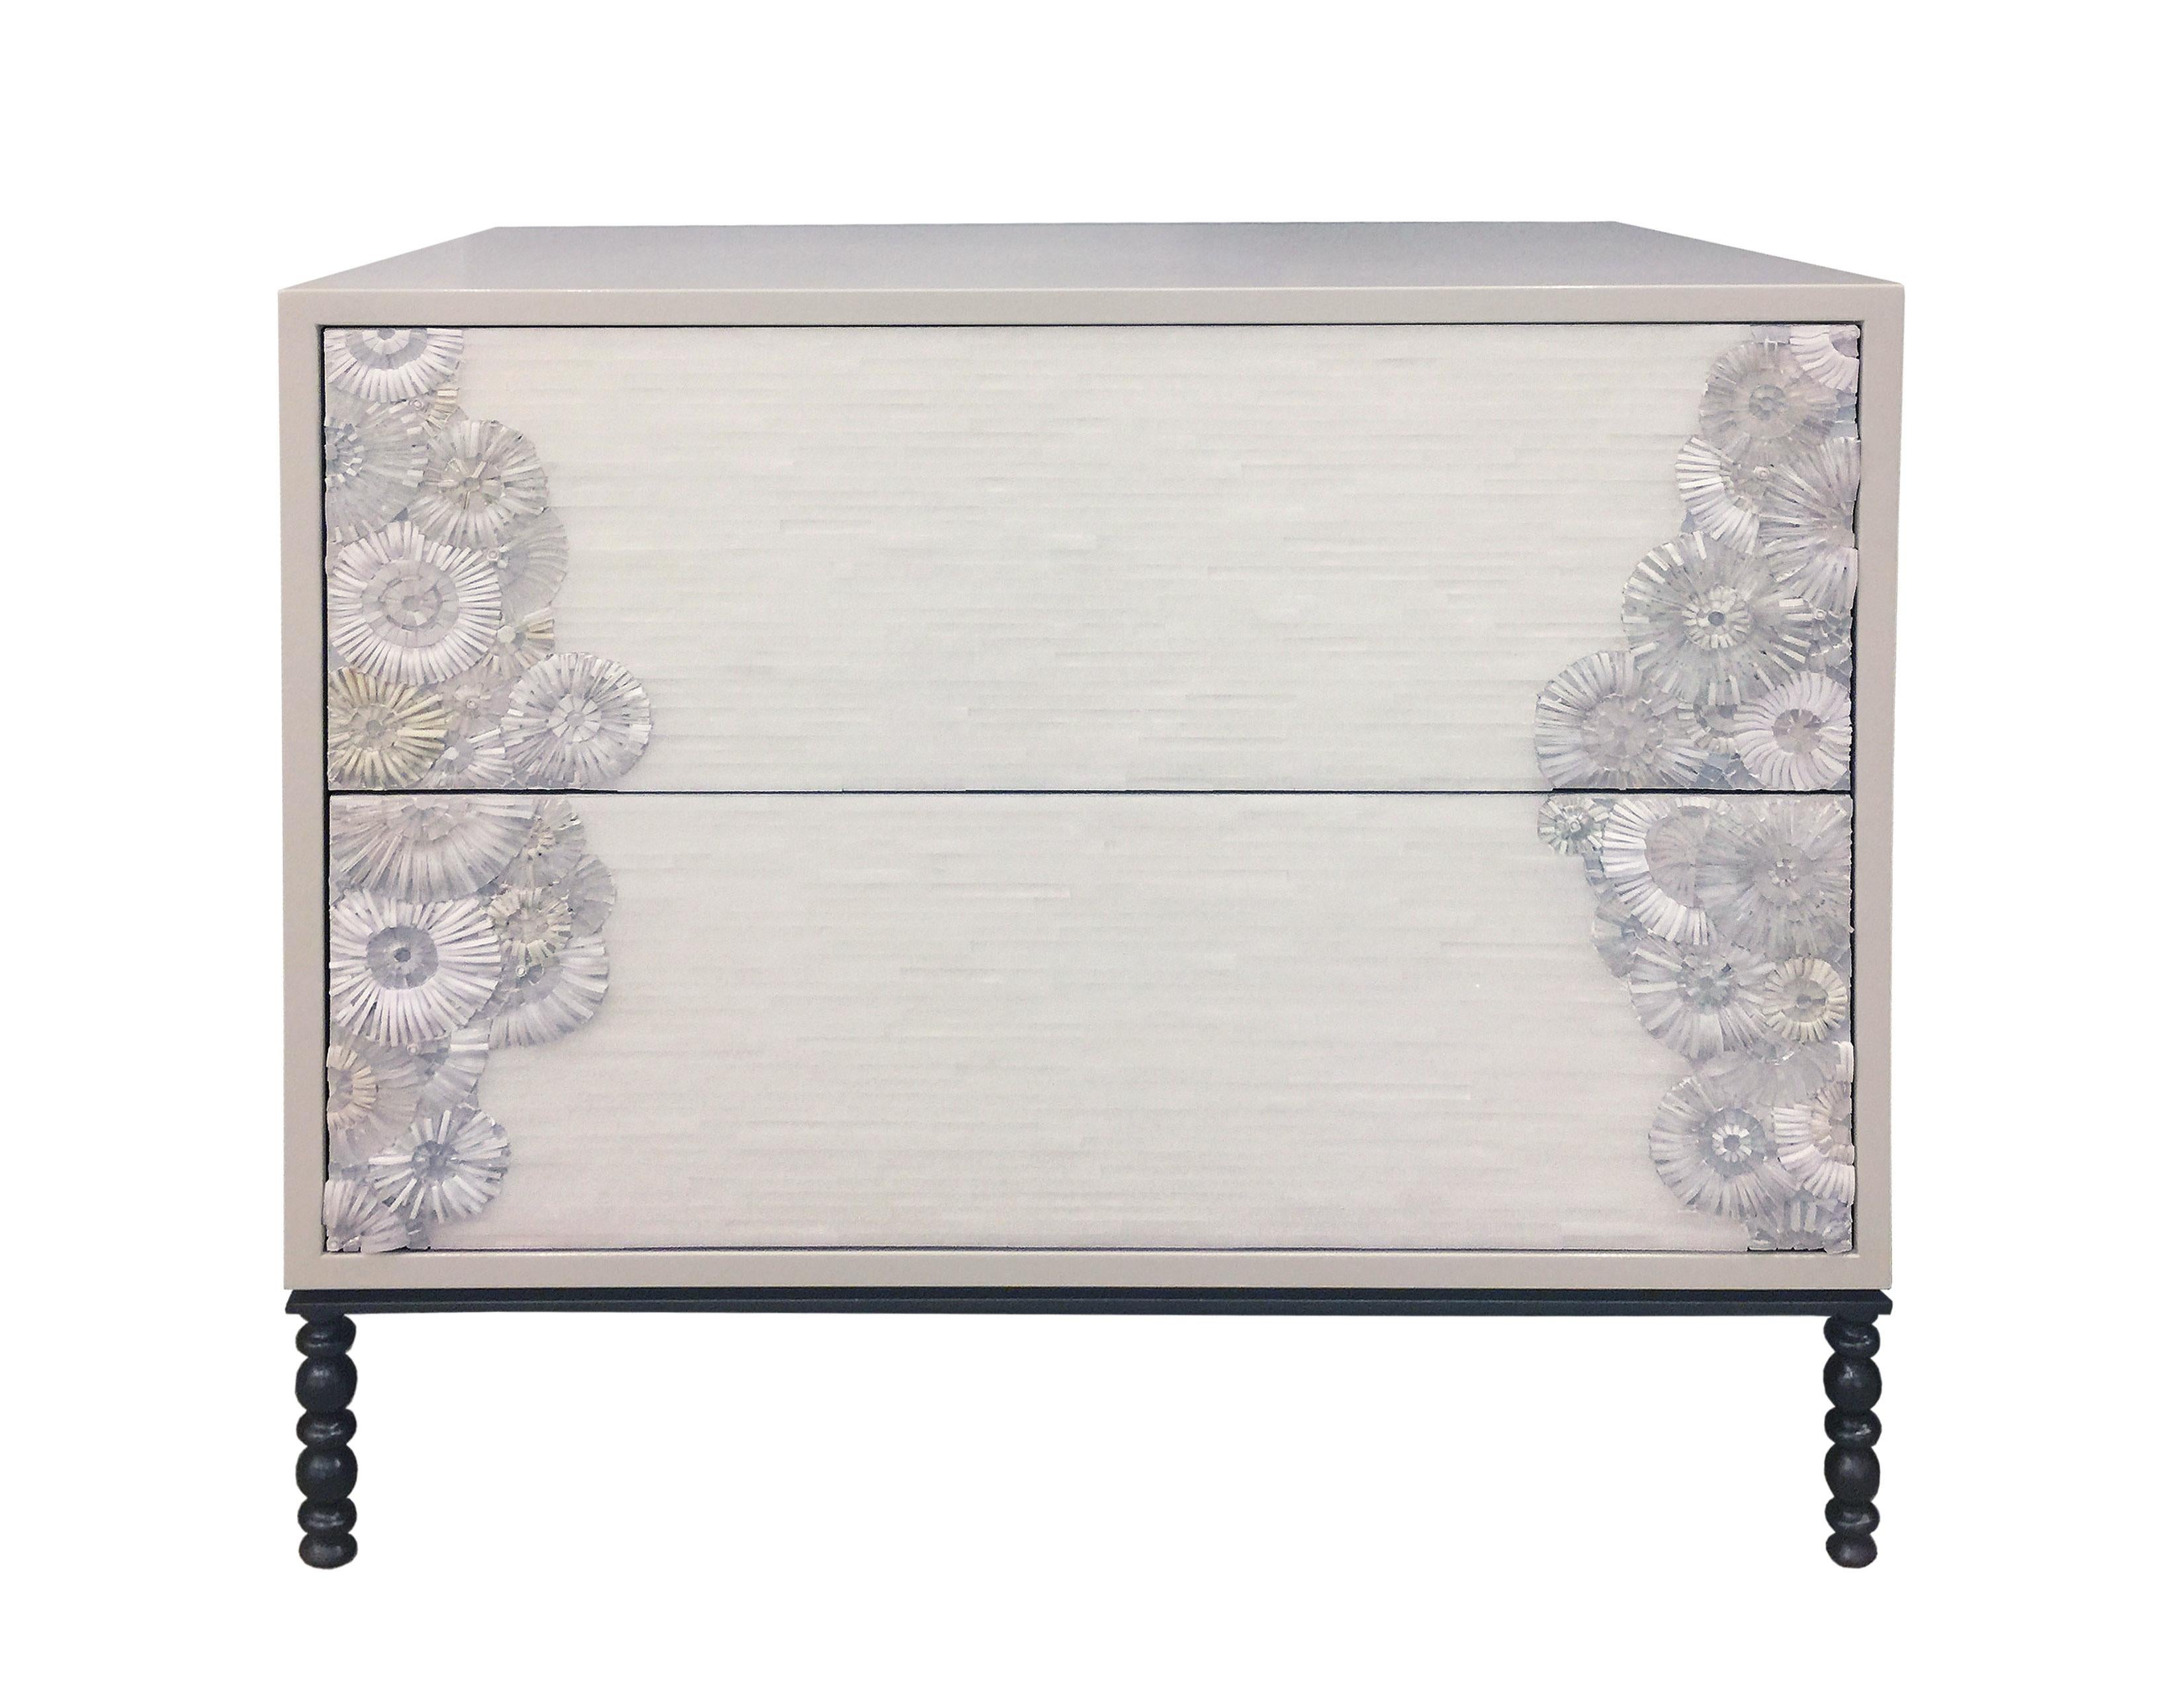 Der Nachttisch Blossom von Ercole Home hat eine Front mit 2 Schubladen und ist aus lackiertem Holz in Misty Gray.
Handgeschliffenes Glasmosaik in verschiedenen Weiß- und Elfenbeintönen schmückt die Oberfläche im Blossom- und Stipe-Mosaikmuster.
Der